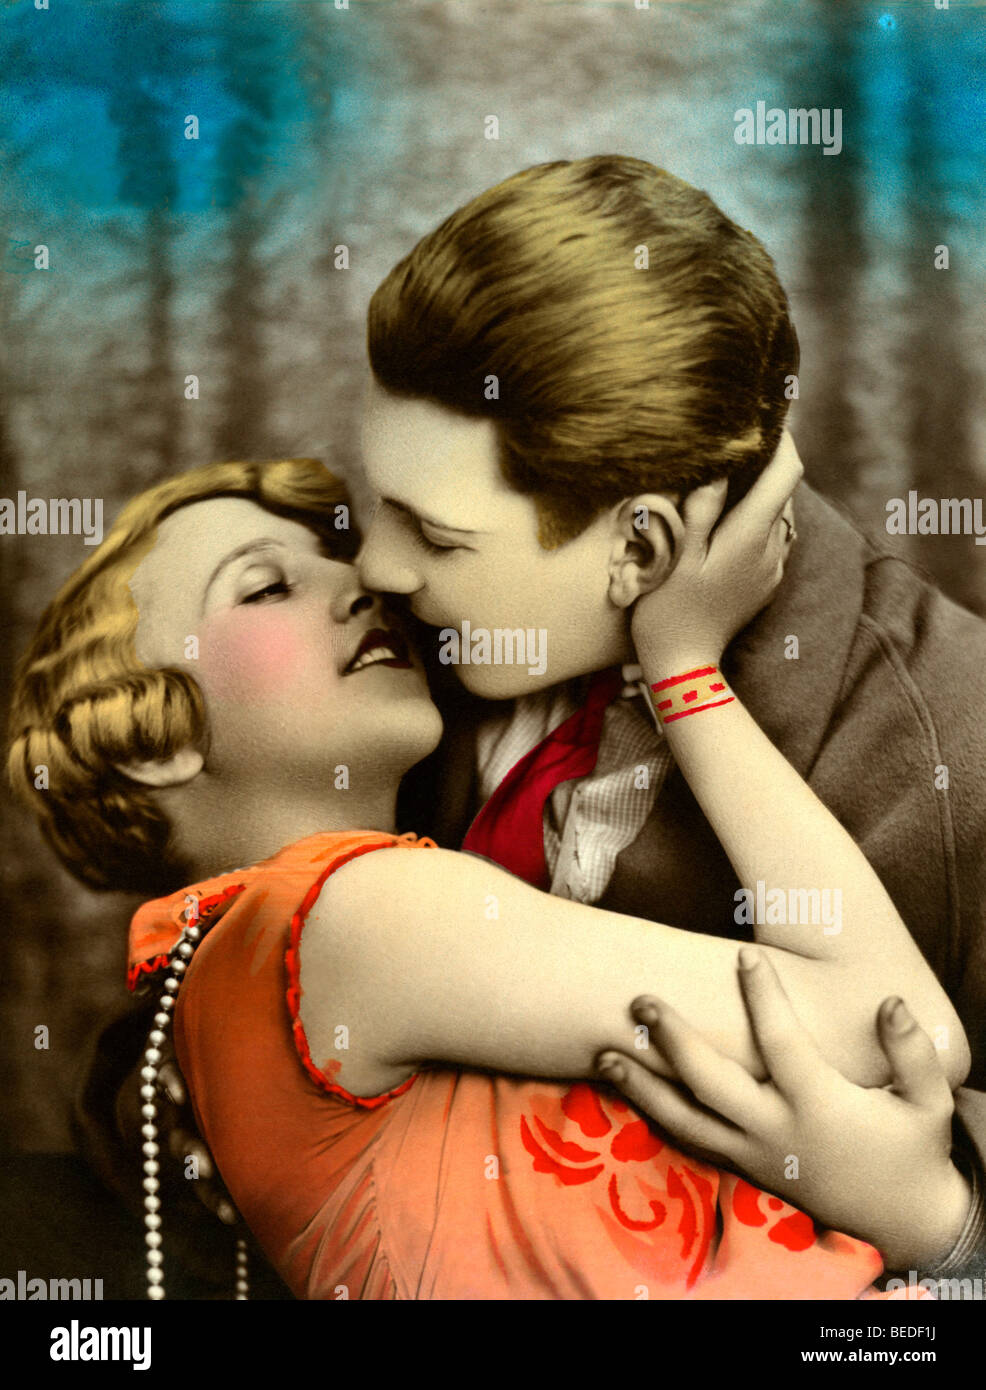 Photographie historique, Kiss, autour de 1925 Banque D'Images